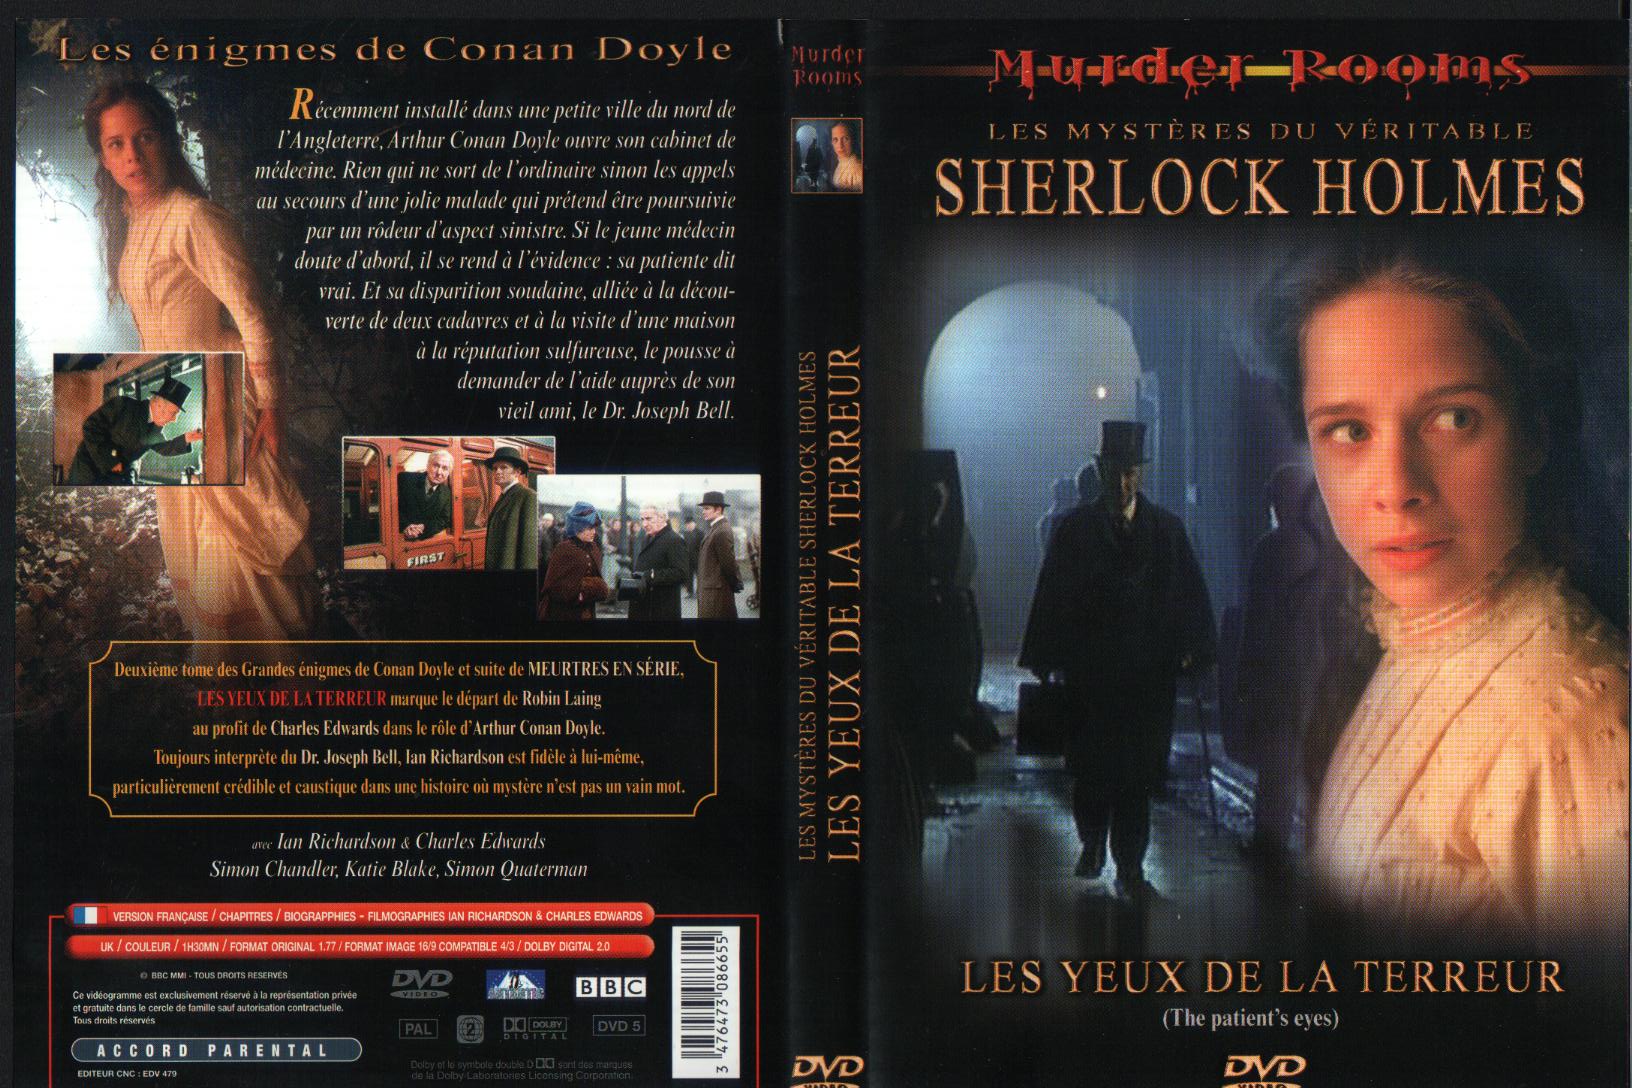 Jaquette DVD Sherlock Holmes - les yeux de la terreur